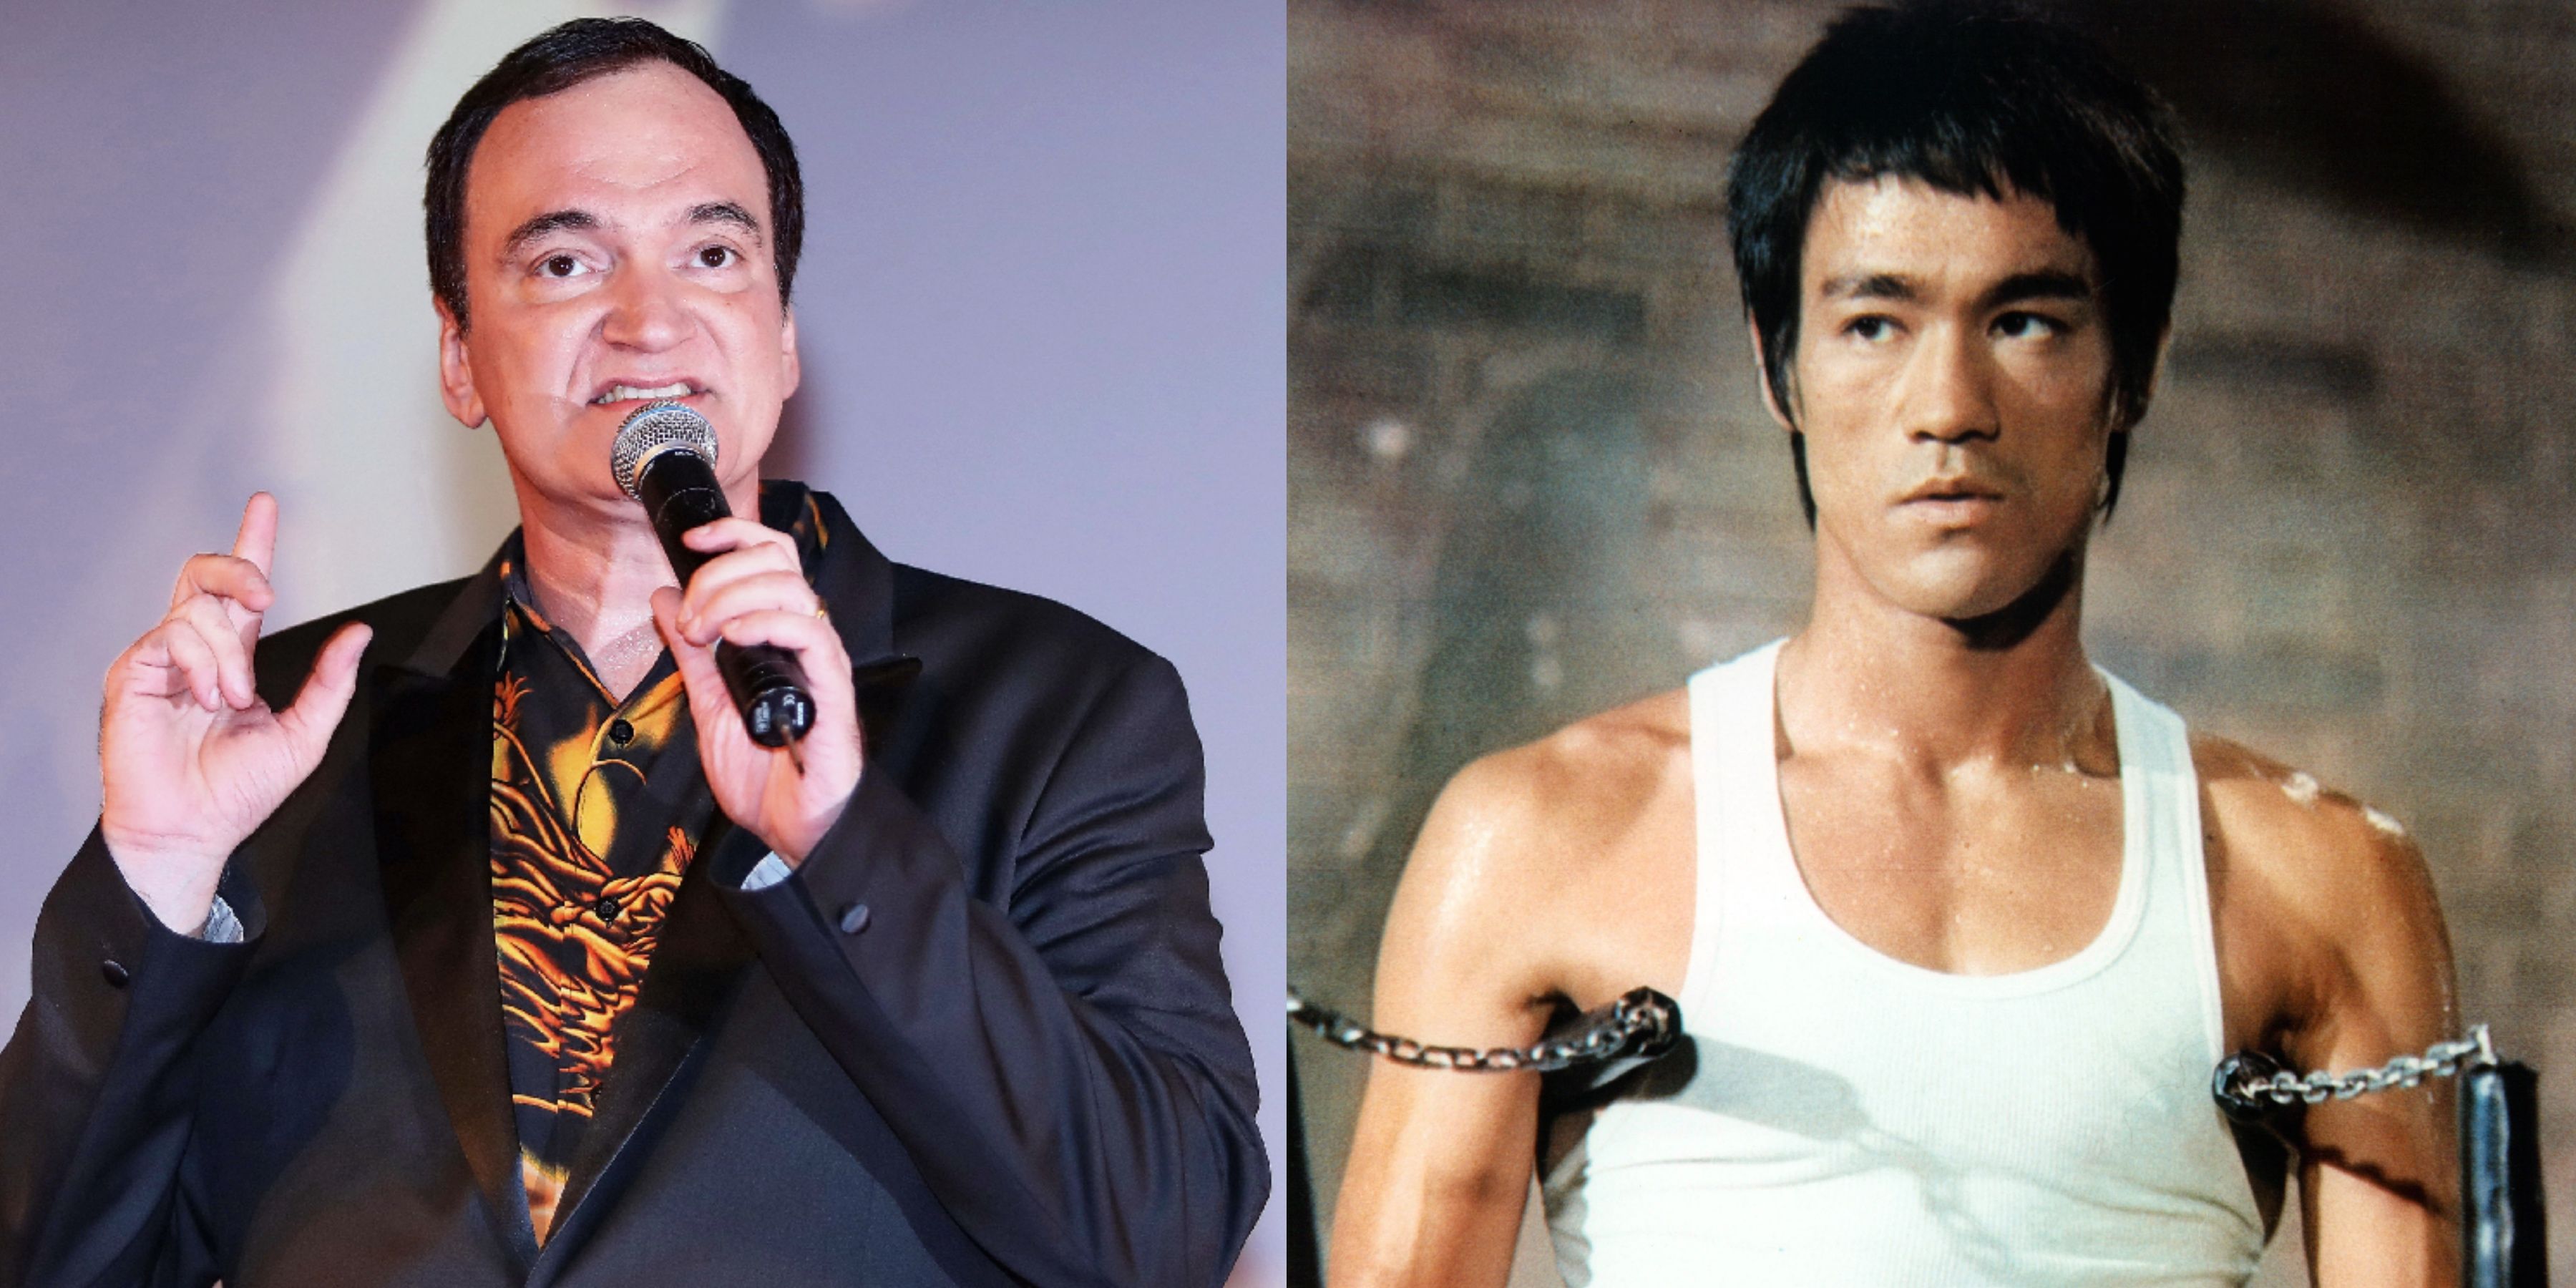 Tarantino failed as an artist with Bruce Lee portrayal, Kareem